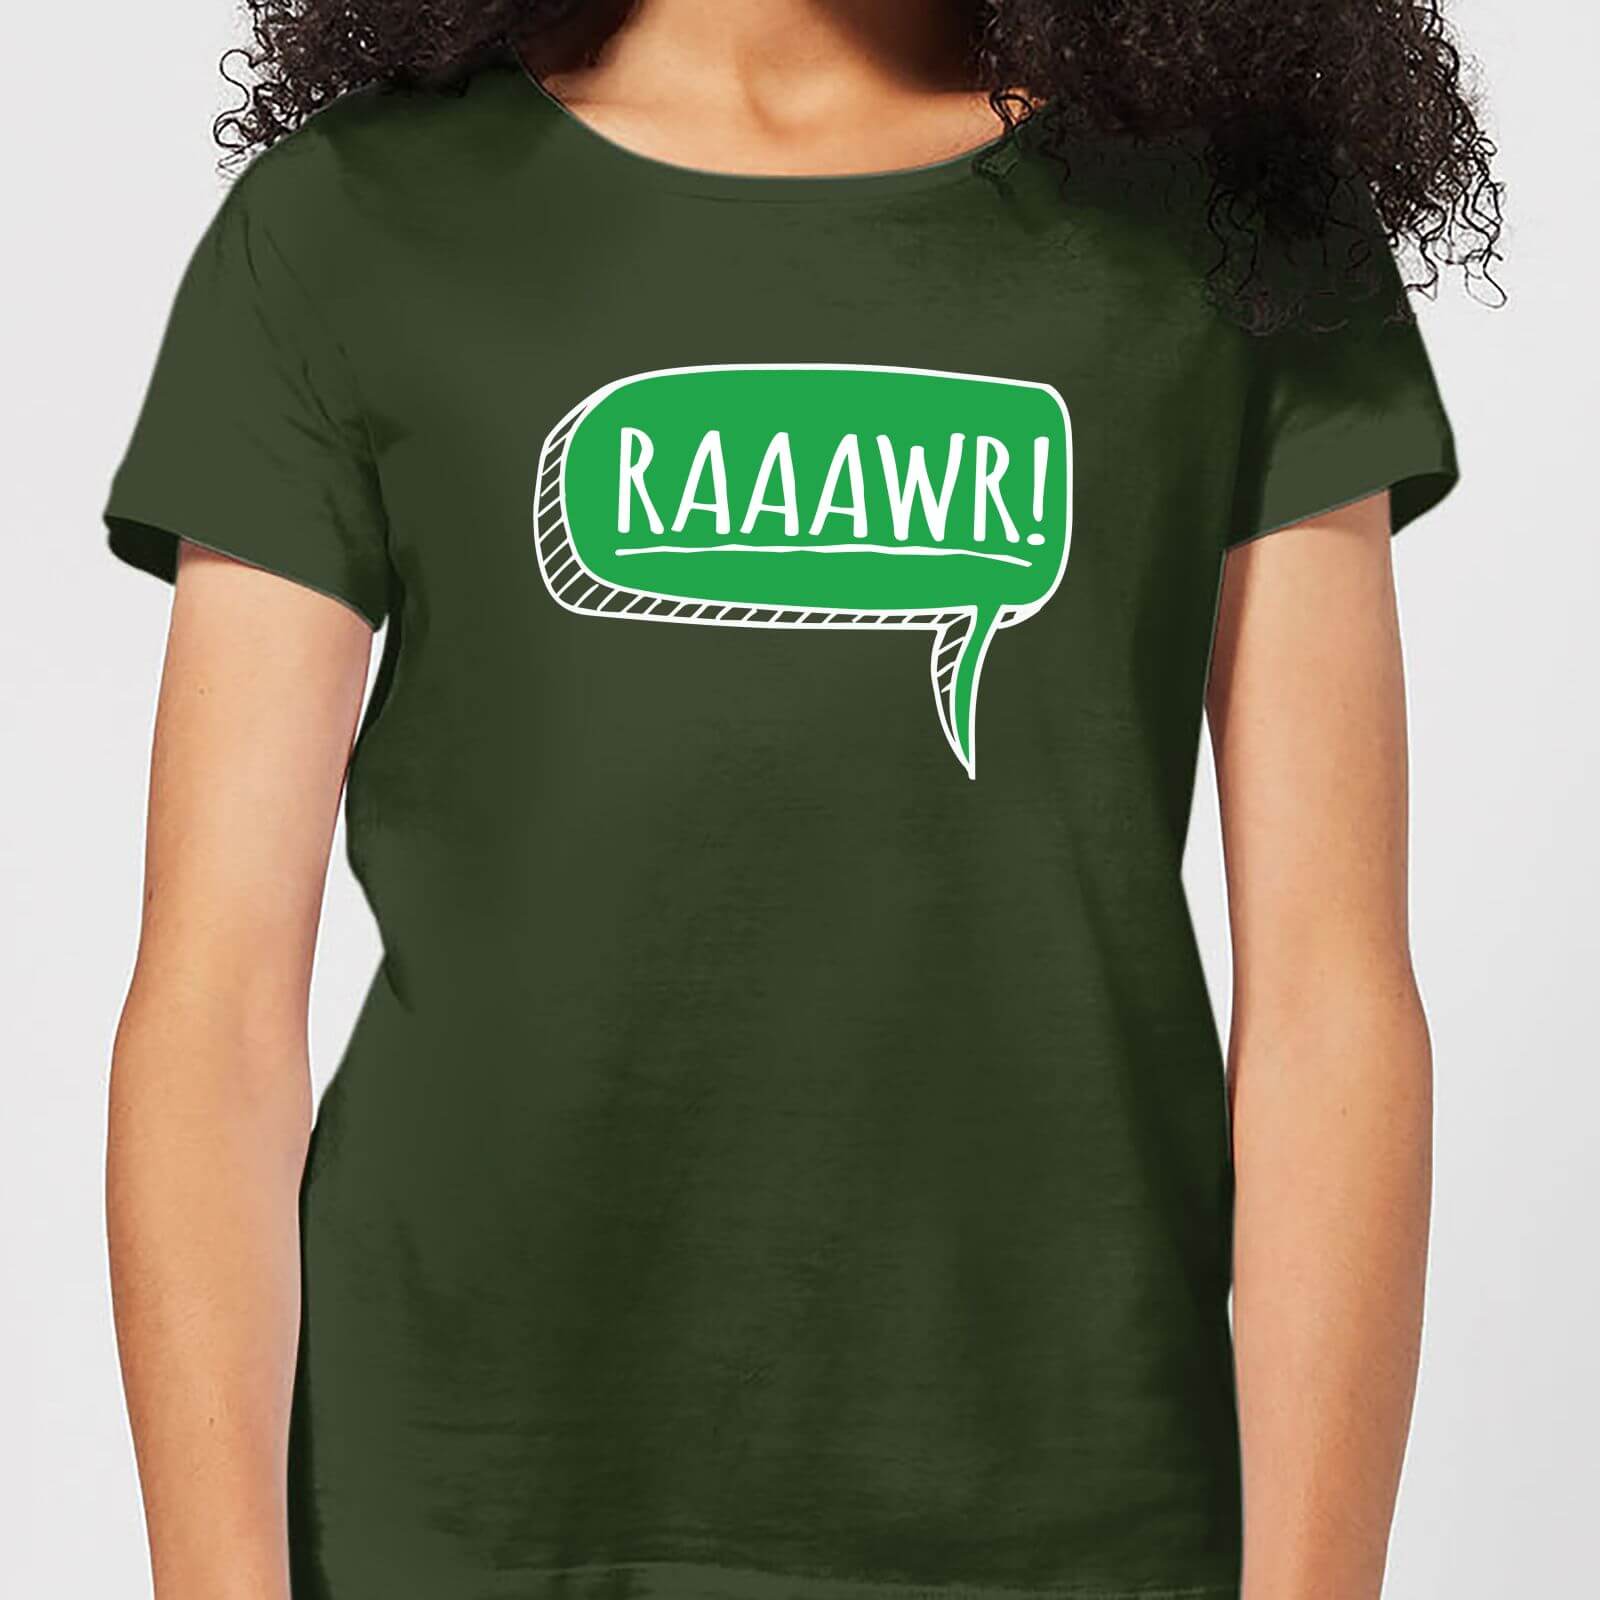 Raaawr Women's T-Shirt - Forest Green - S - Forest Green